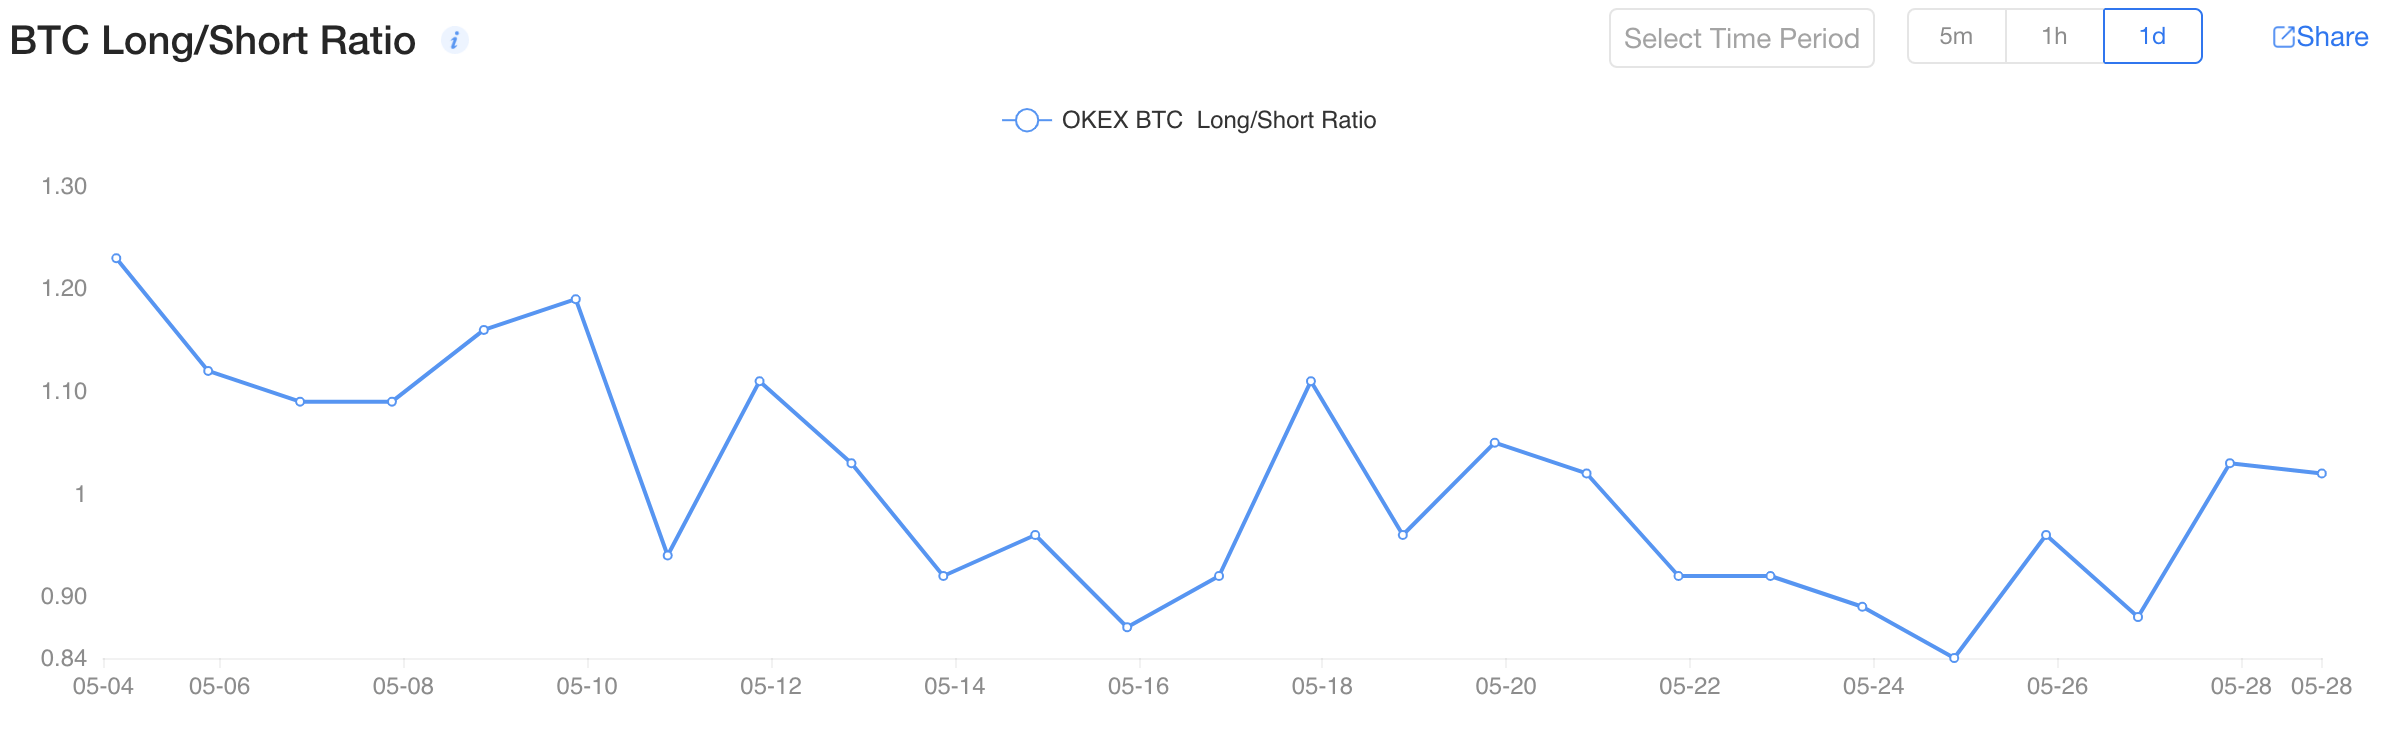 Rapporto BTC lungo / breve OKEx